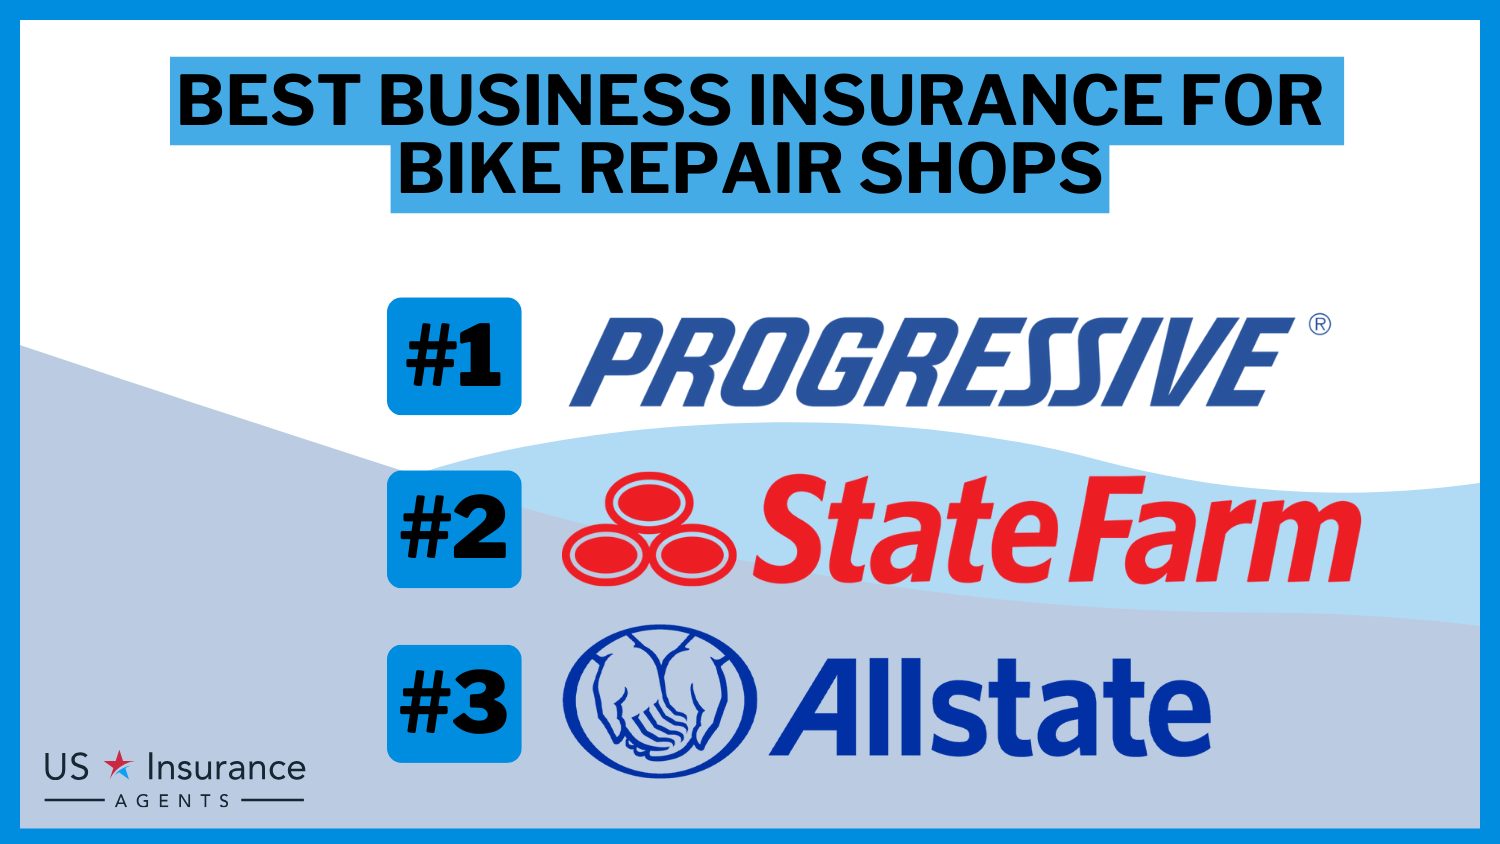 3 Best Business Insurance for Bike Repair Shops: Progressive, StateFarm and Allstate.